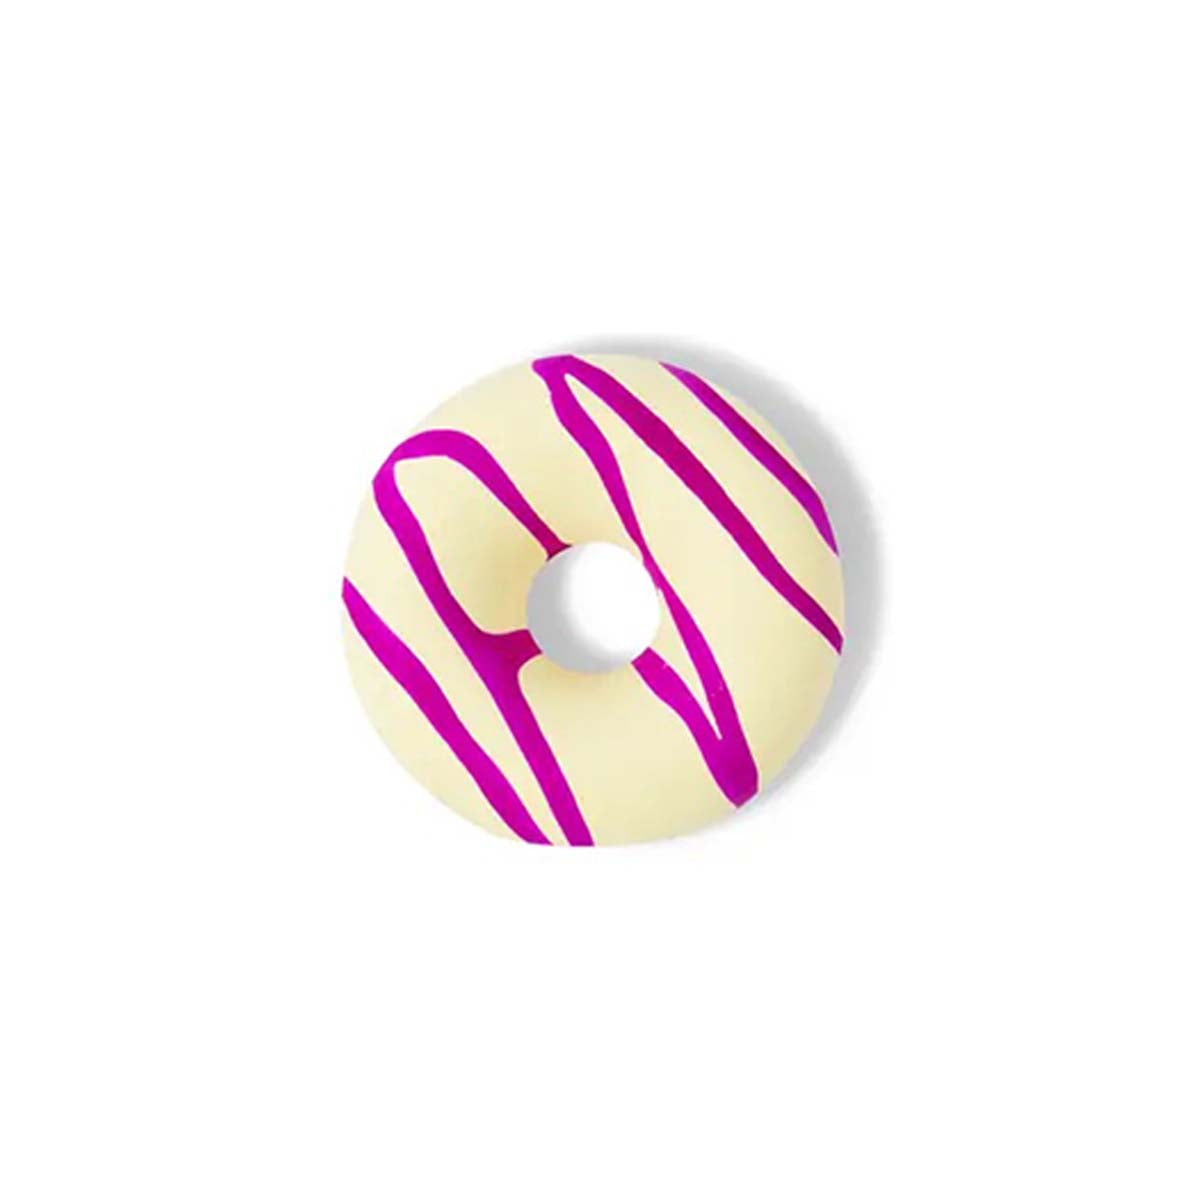 Stoepkrijten is dubbel zo leuk met deze stoepkrijt drizzle donut yellow/purple van het merk TWEE. Dit stoepkrijt is niet zomaar een krijtje, maar heeft de vorm van een heerlijke donut! Je zal er bijna trek in krijgen! VanZus